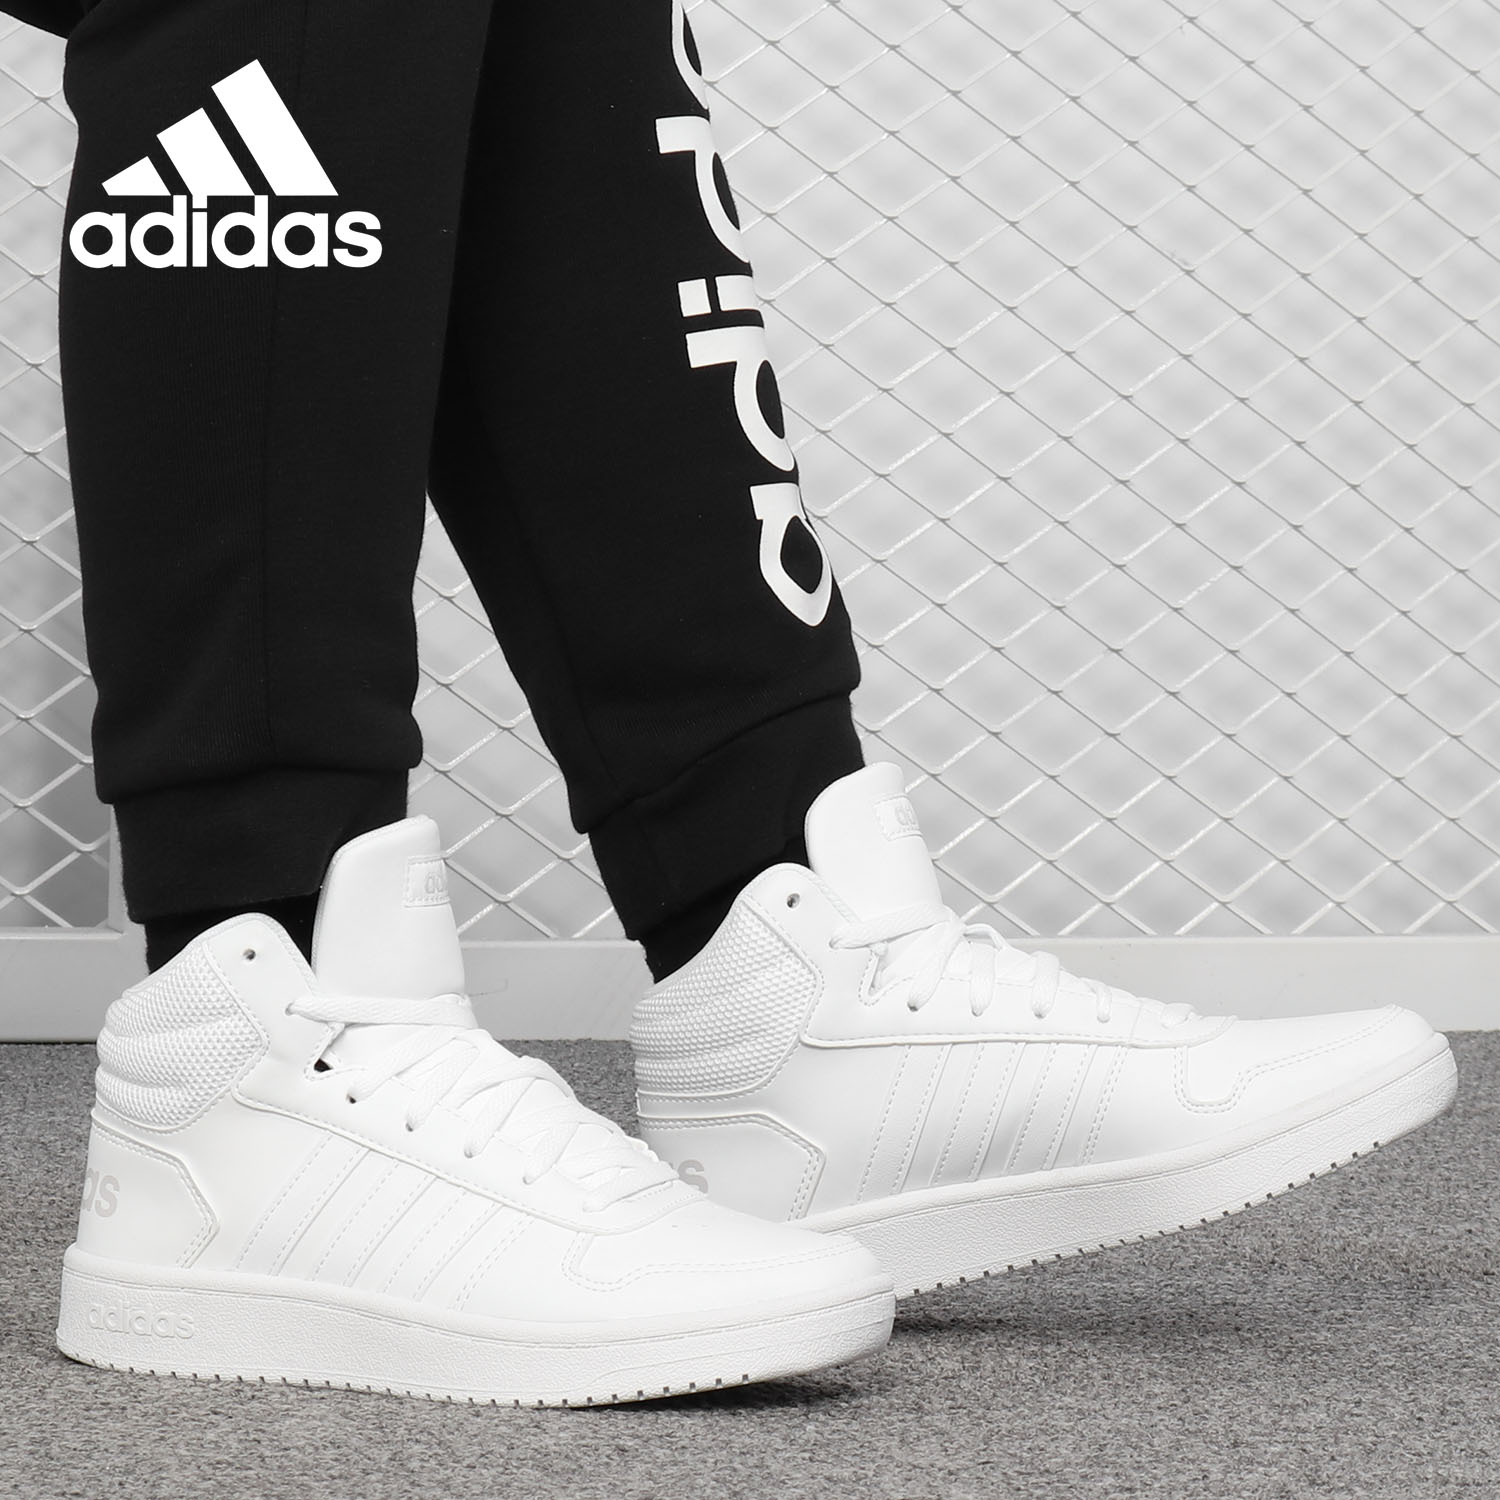 Adidas/阿迪达斯正品2019新款HOOPS 2.0 MID女子休闲篮球鞋B42099